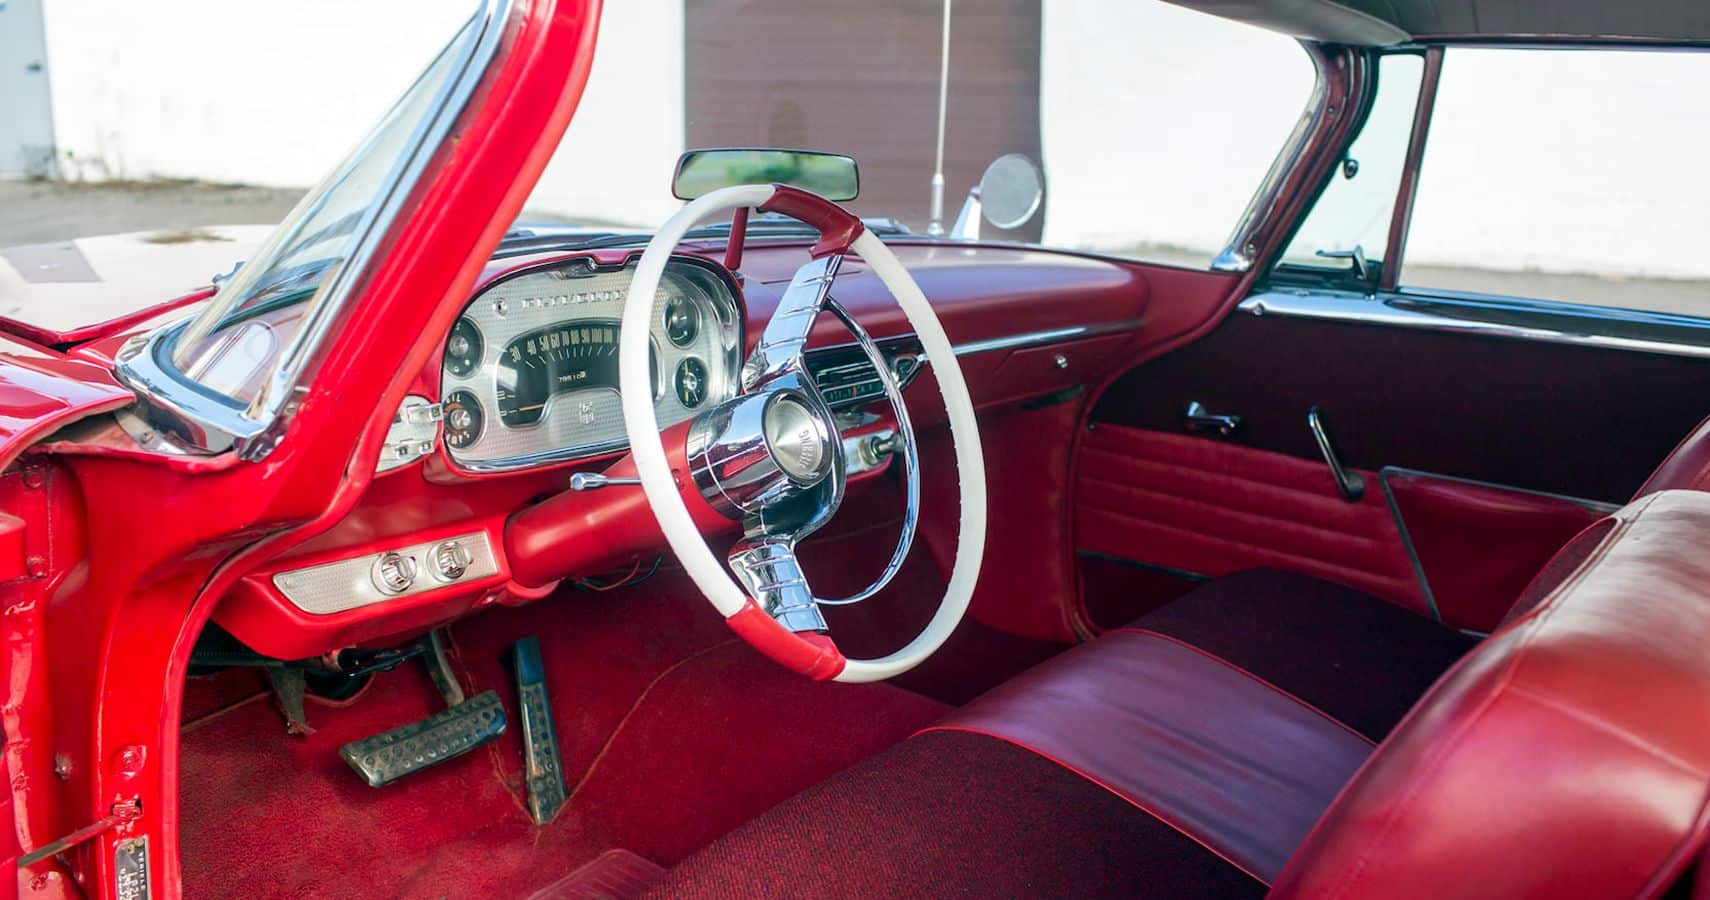 el Plymouth Fury de 1958, llamado Christine, fue restaurado posteriormente a su antigua gloria y volvió a cambiar de manos, vendiéndose en la subasta Barrett-Jackson Scottsdale 2015 por 198.000 dólares